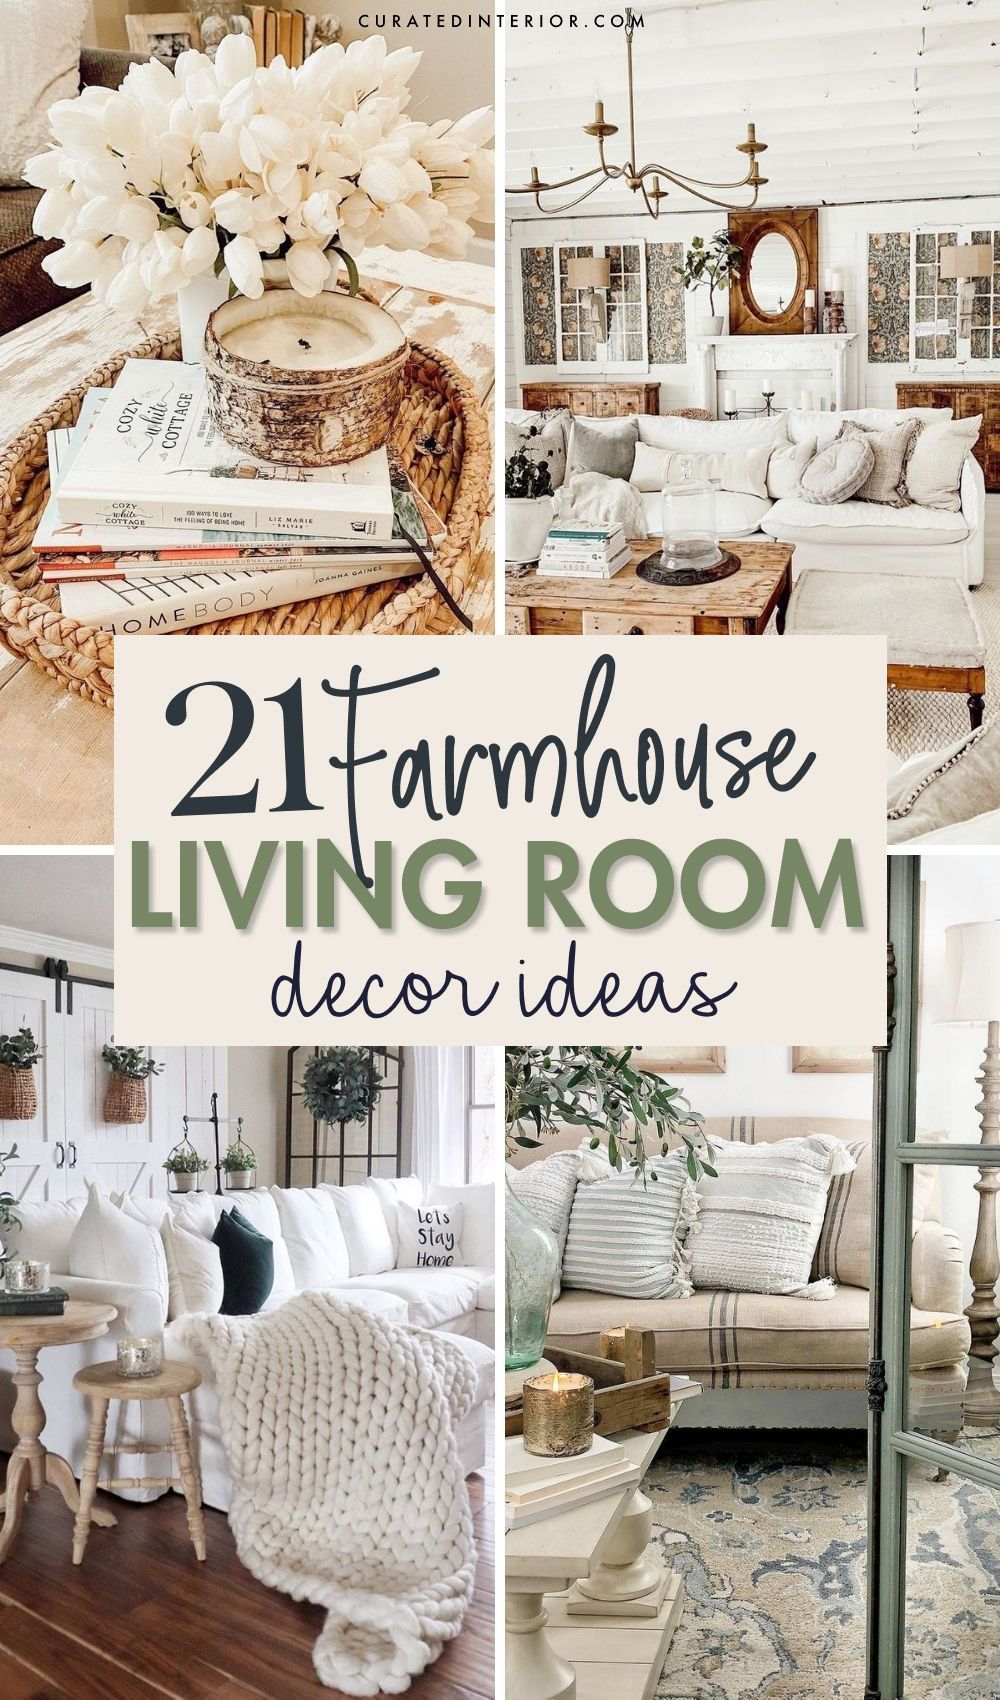 21 Farmhouse Living Room Decor Ideas